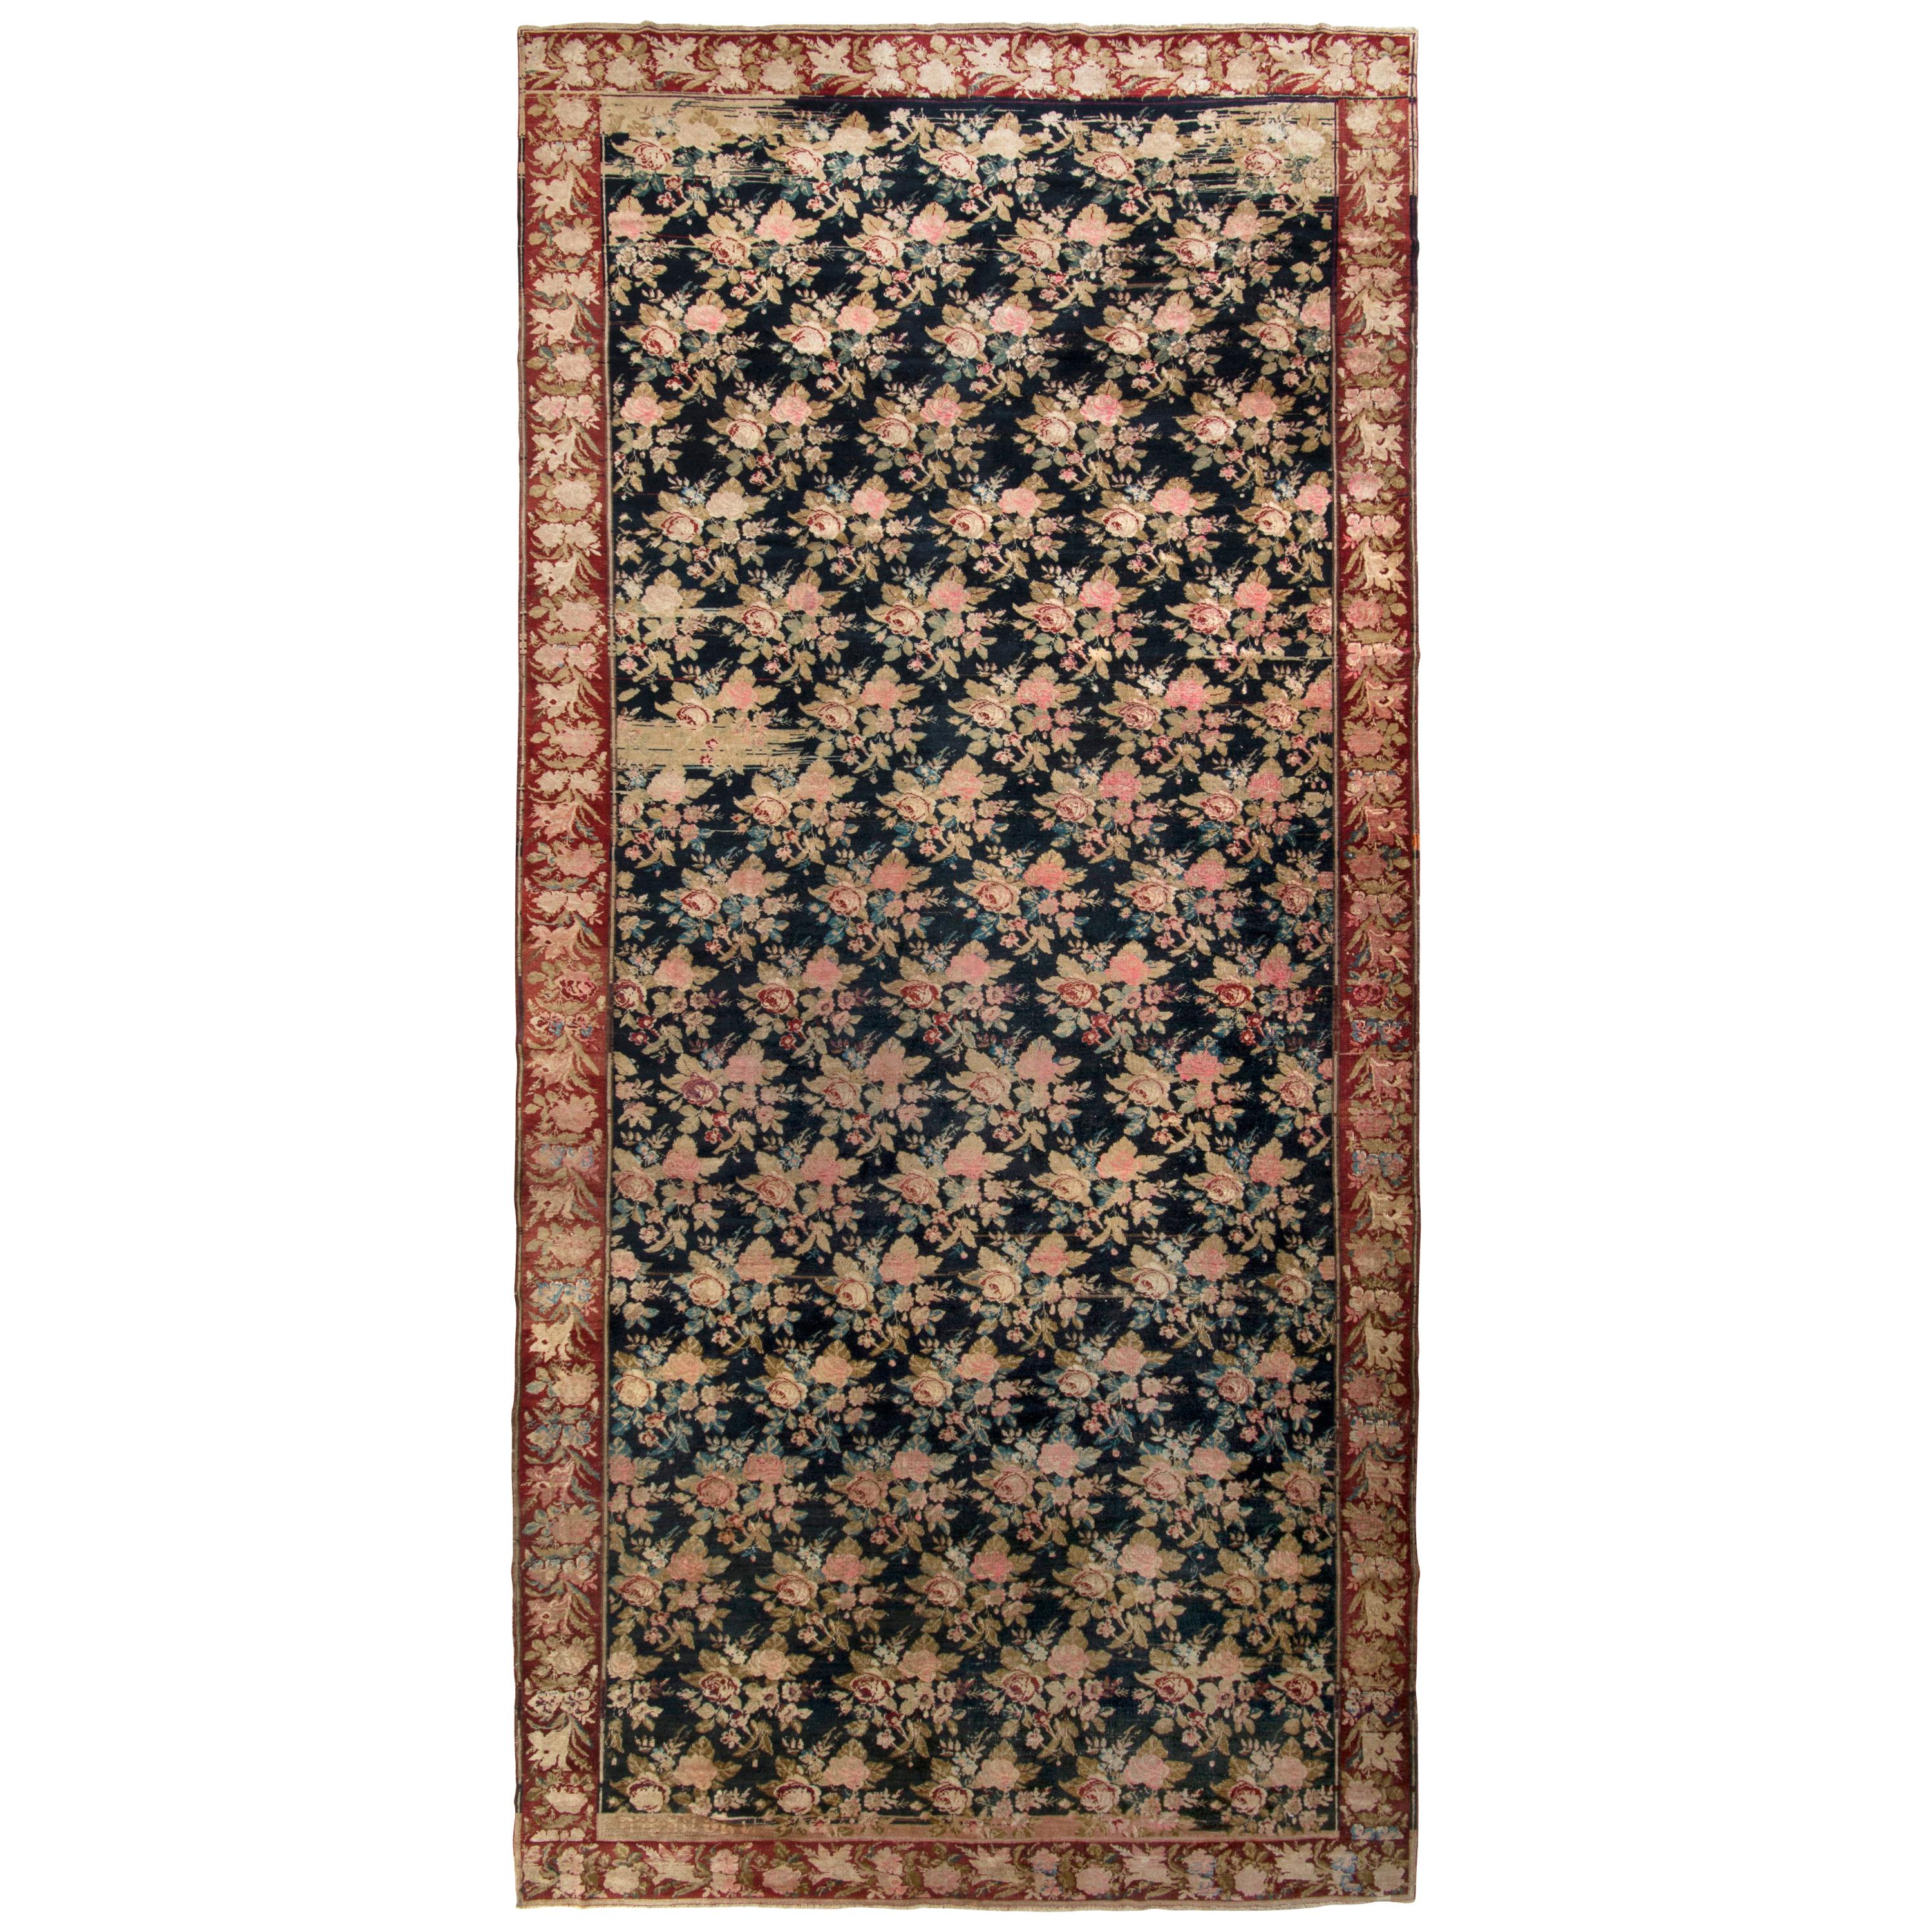 Hand-Knotted Antique Karabagh Rug, Pink and Black Floral Pattern For Sale